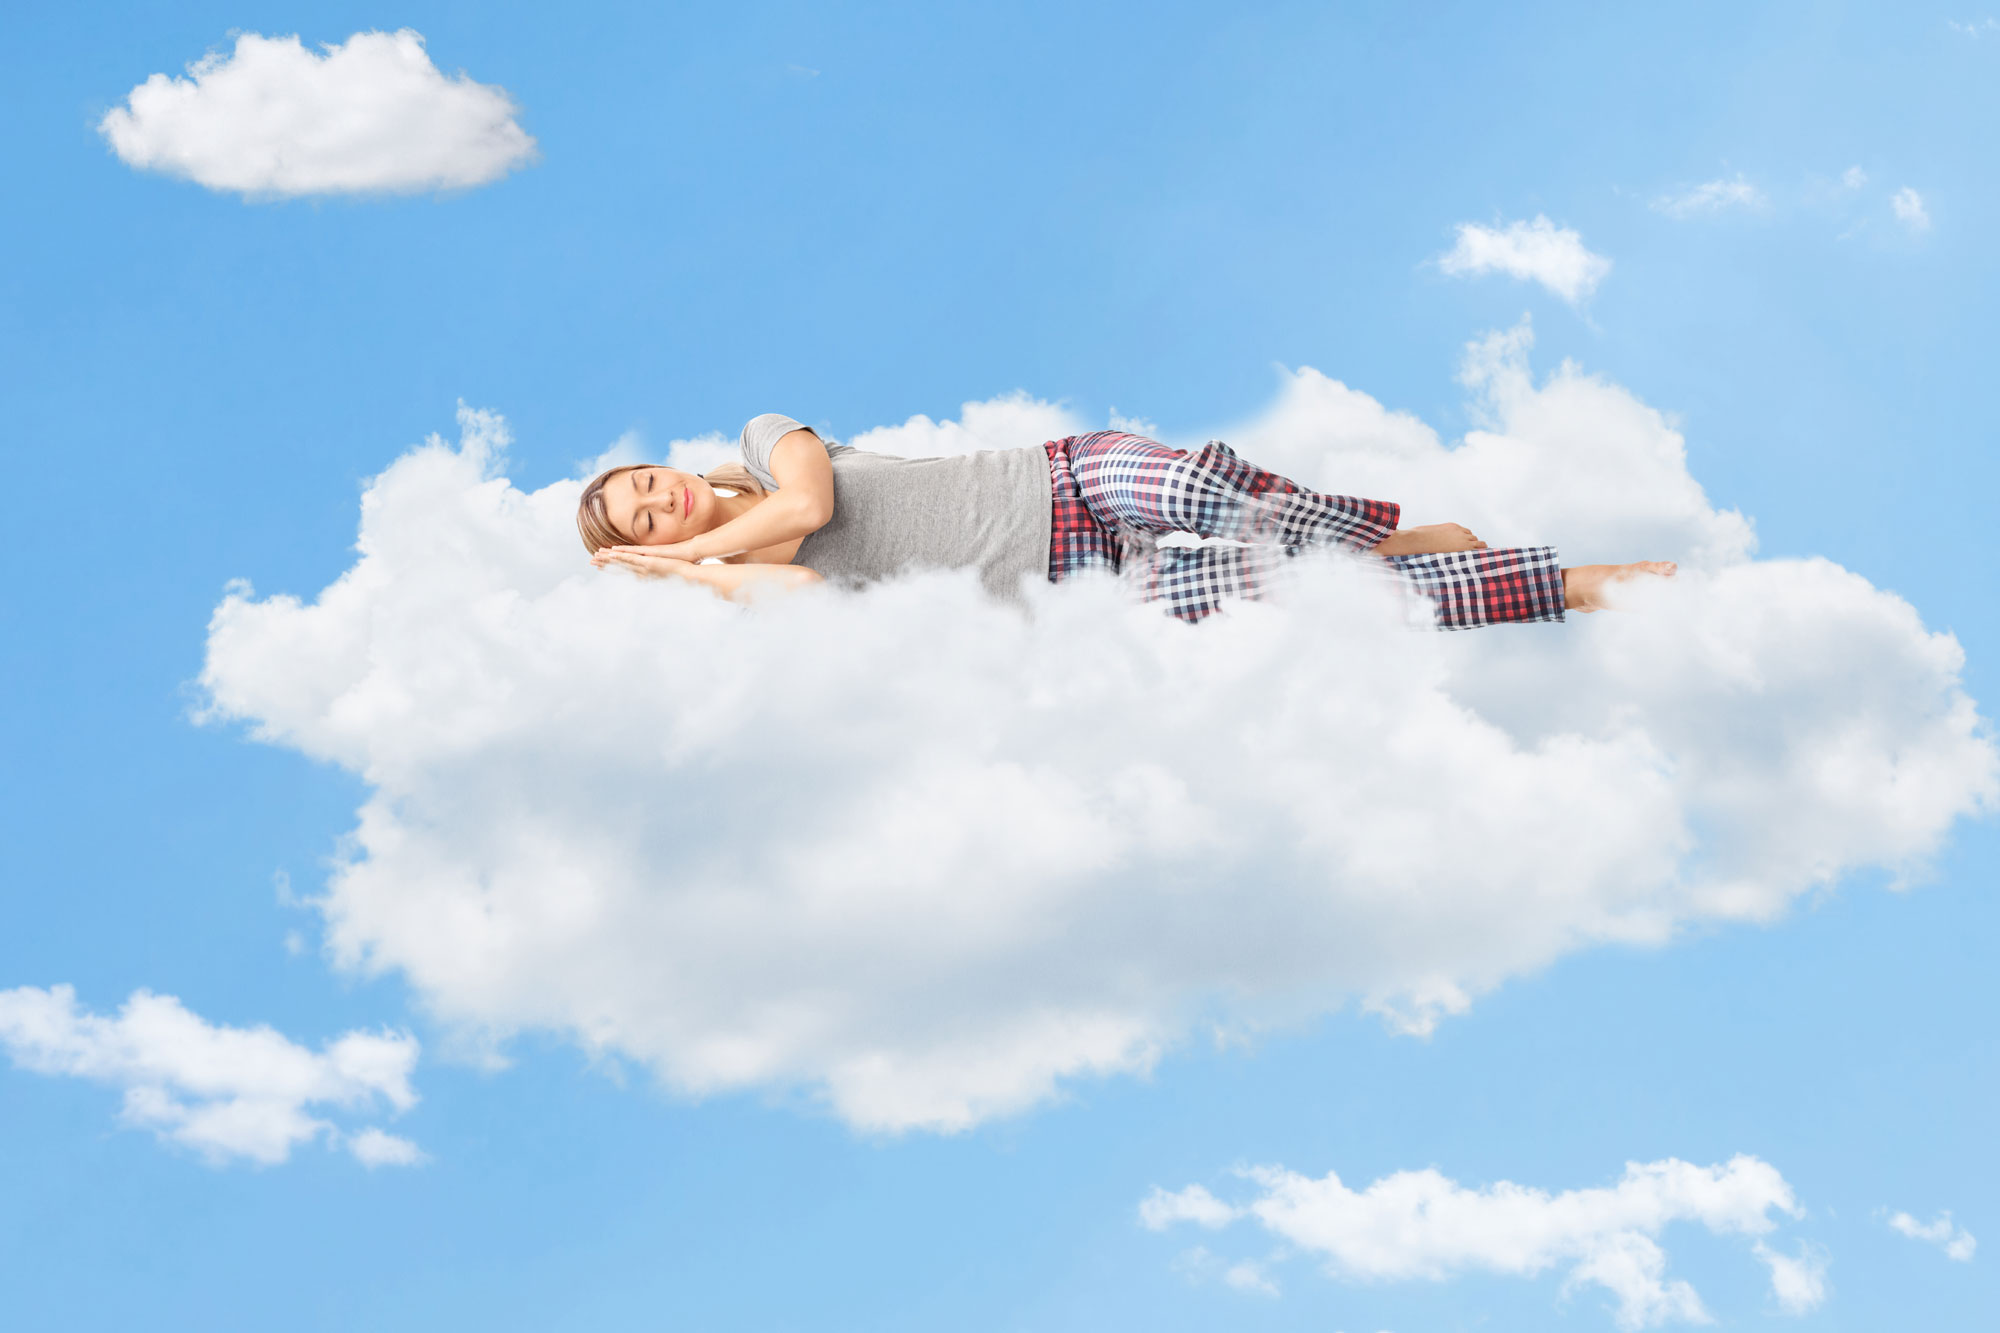 Naturgemäße Bodenbeläge Gerhard Koch, Luftbett, woman sleeping on cloud 